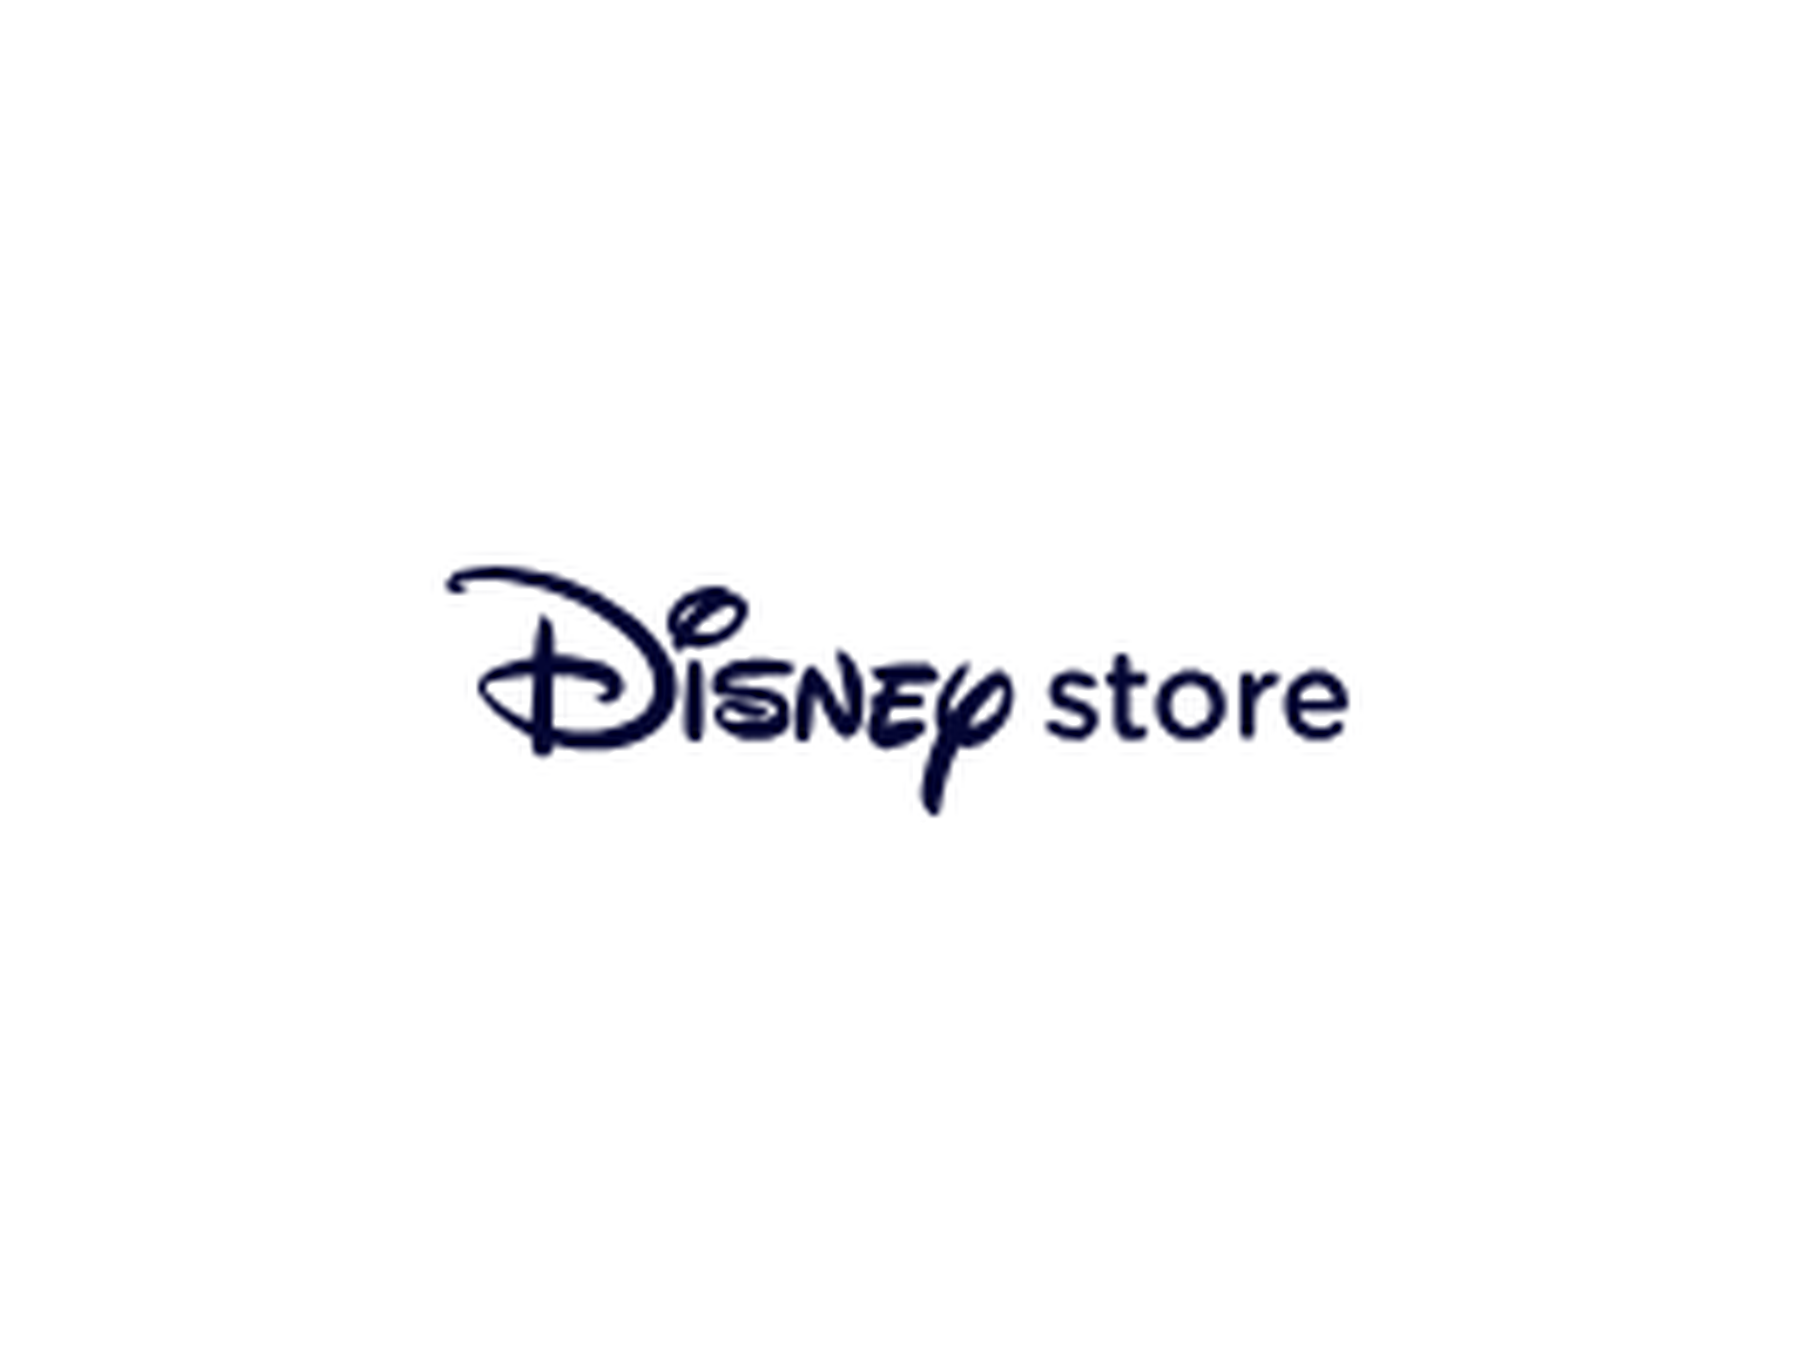 Código descuento Disney Store